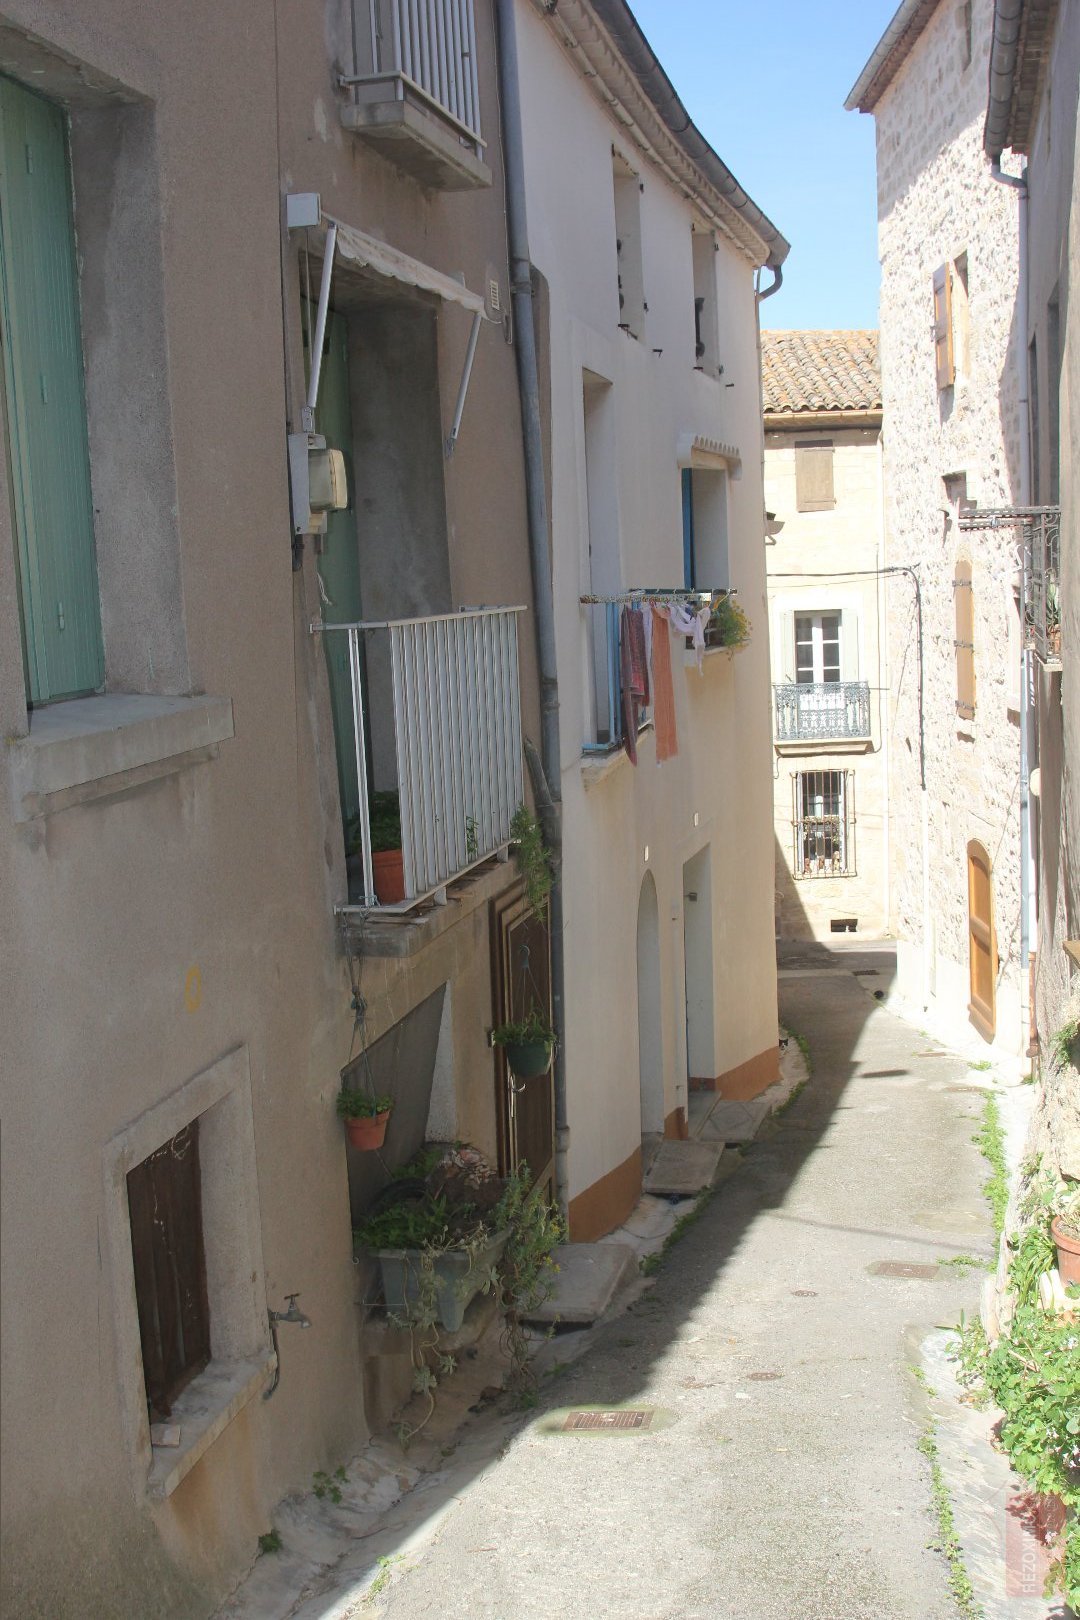 Bienvenue à Castelnau de Guers, village Médiéval  Languedocien de 1200 habitants, situé idéalement à 3 km de Pézenas et de lA75, permettant de relier 